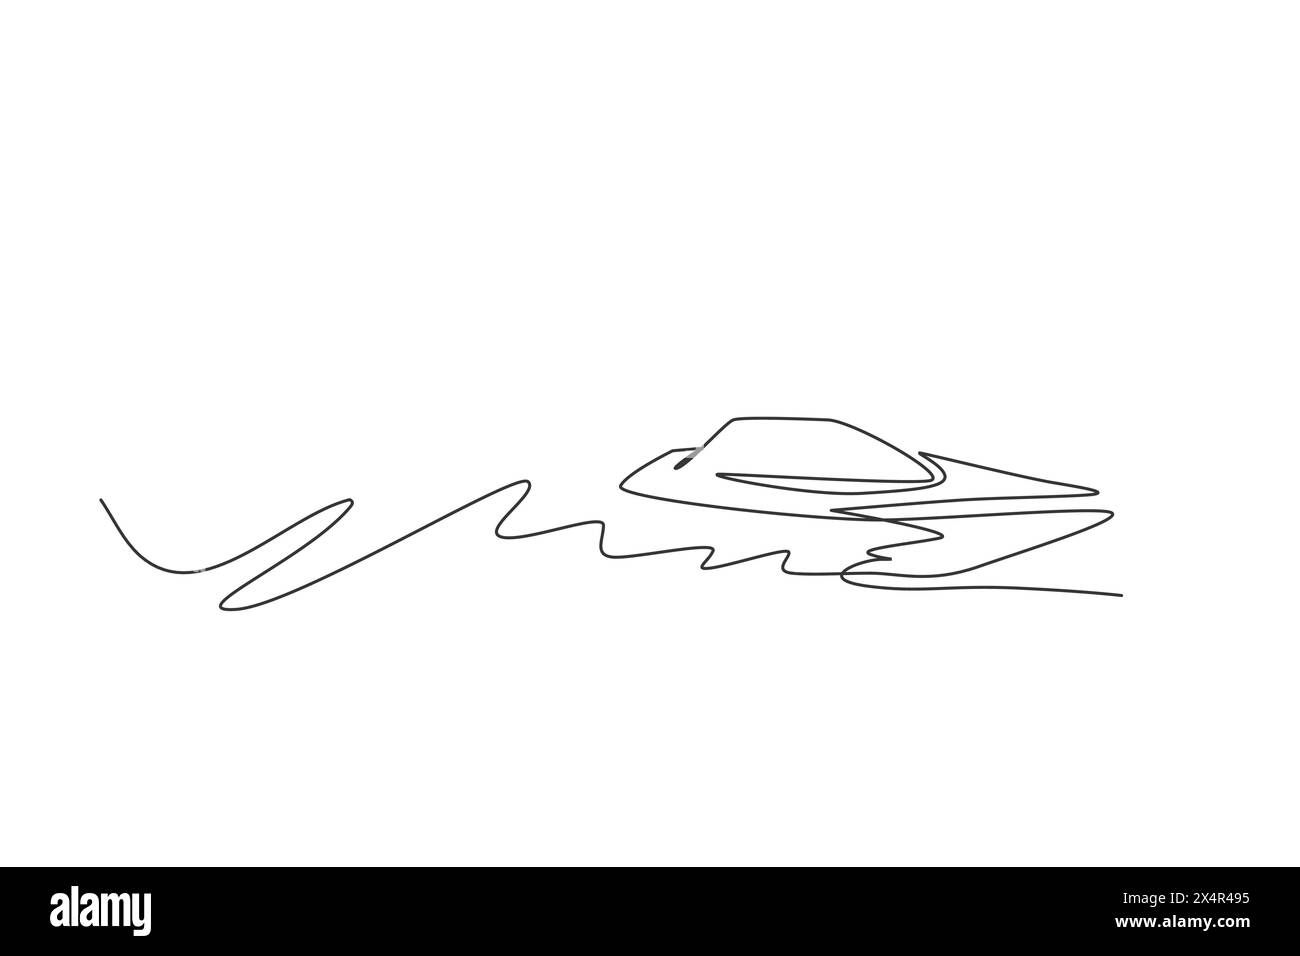 Eine einzelne Linie Zeichnung des schnellen Schnellbootes Segeln auf der Meer grafischen Vektor-Illustration. Fahrzeugkonzept für den Wassertransport. Modernes kontinuierliches lin Stock Vektor